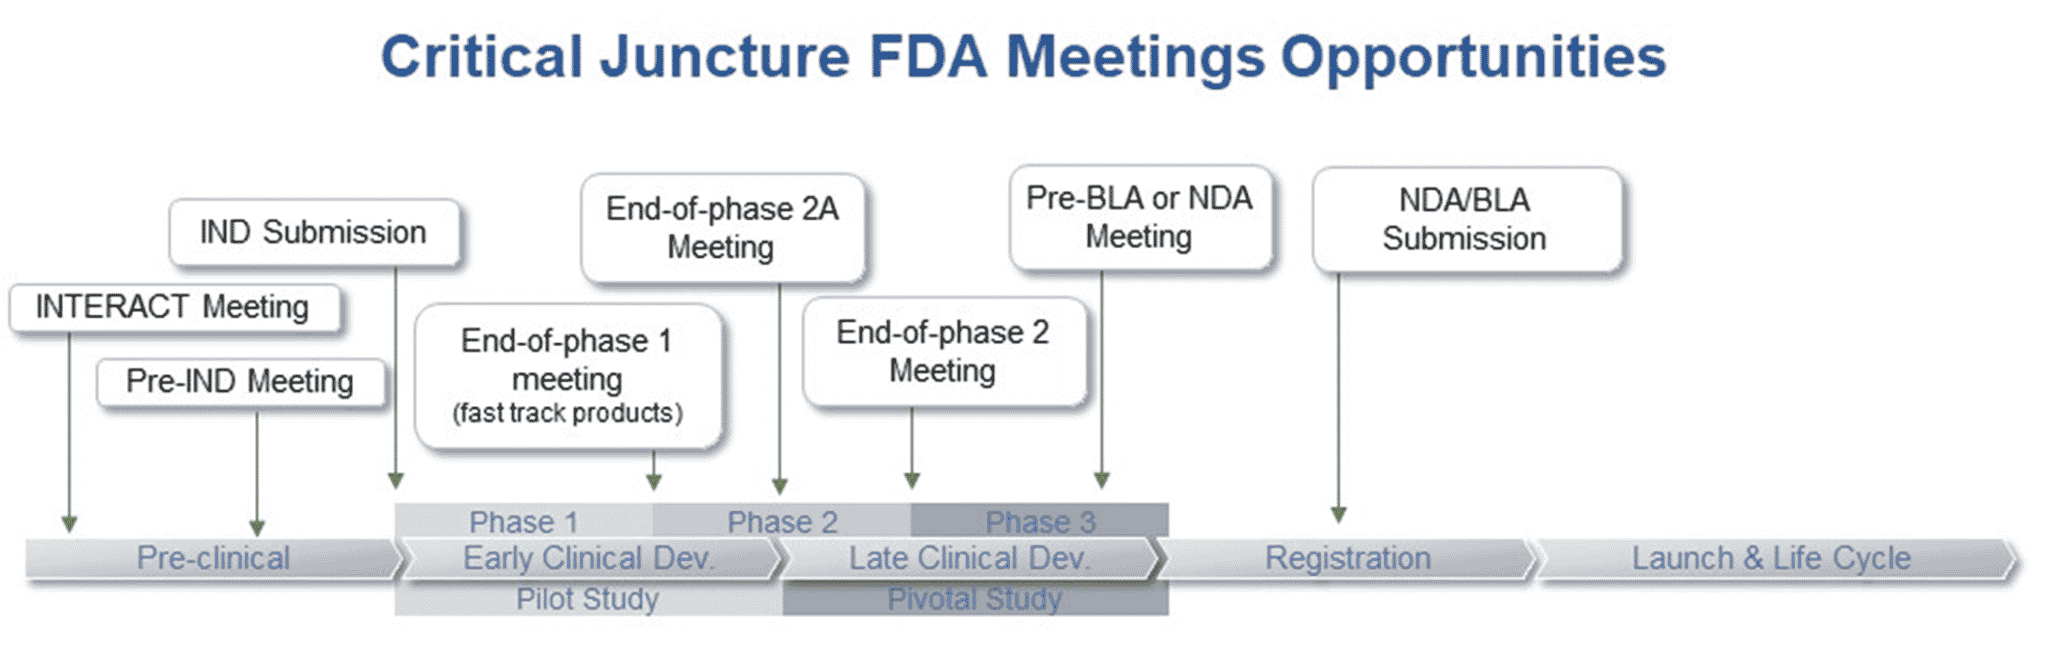 Critical Juncture FDA Meeting Opportunities